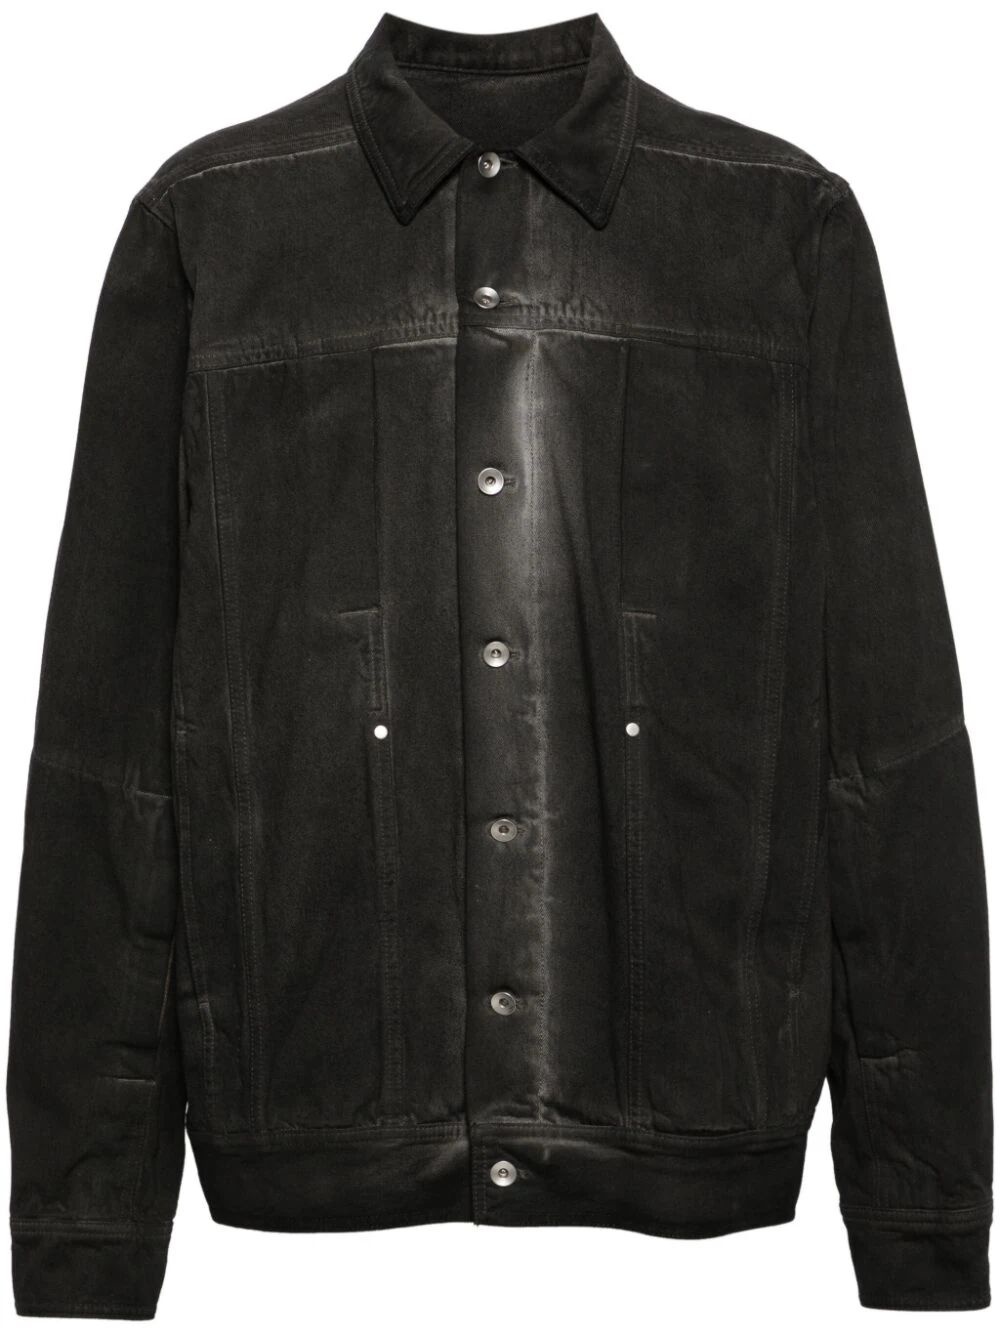 Lido workwear jacket in dark dust - 1